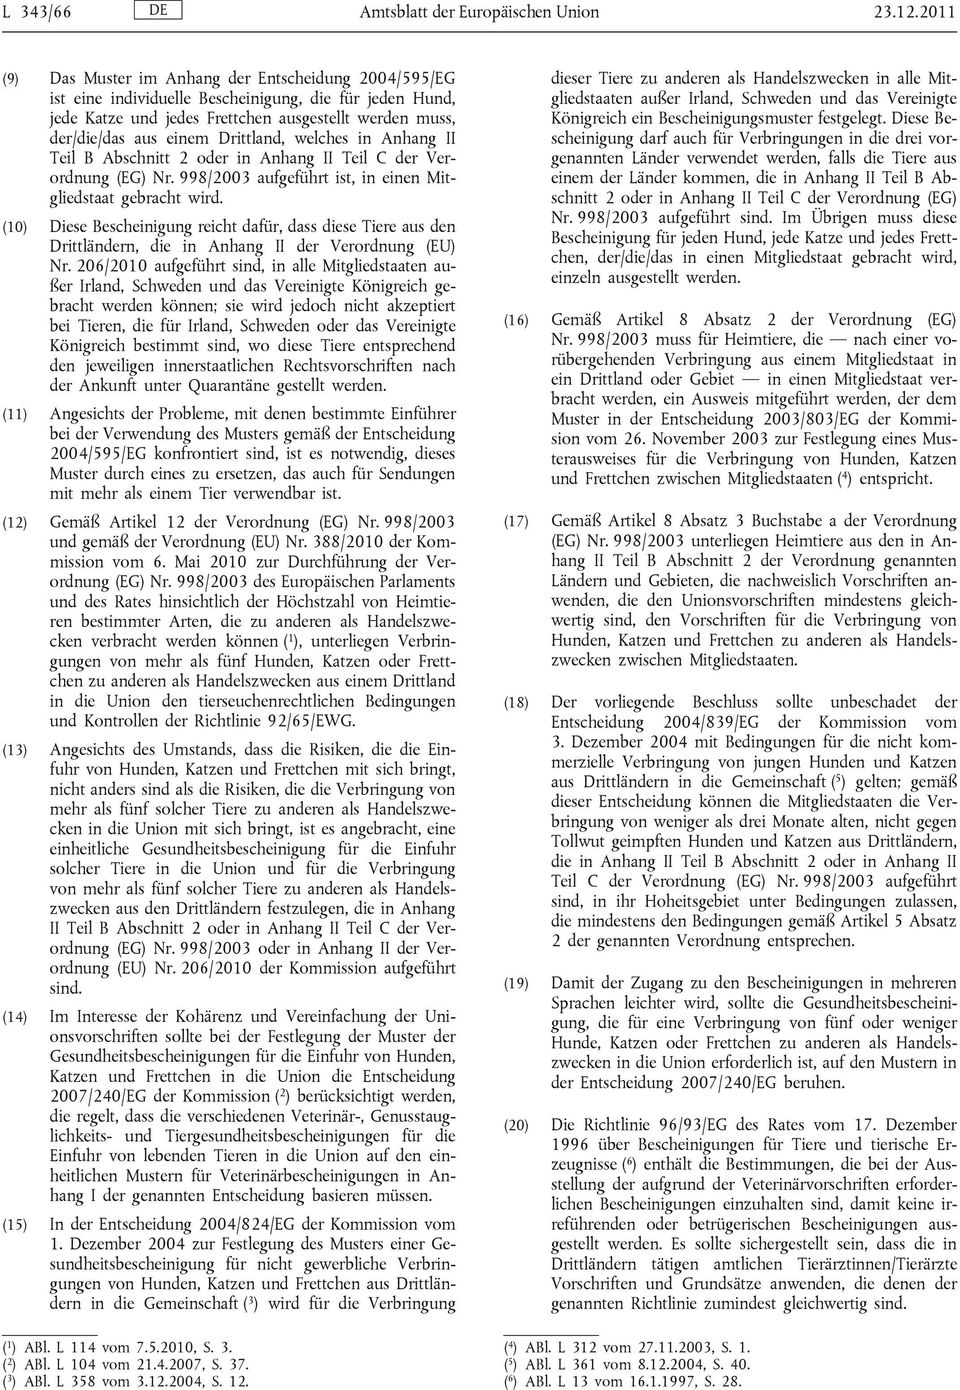 Drittland, welches in Anhang II Teil B Abschnitt 2 oder in Anhang II Teil C der Verordnung (EG) Nr. 998/2003 aufgeführt ist, in einen Mitgliedstaat gebracht wird.